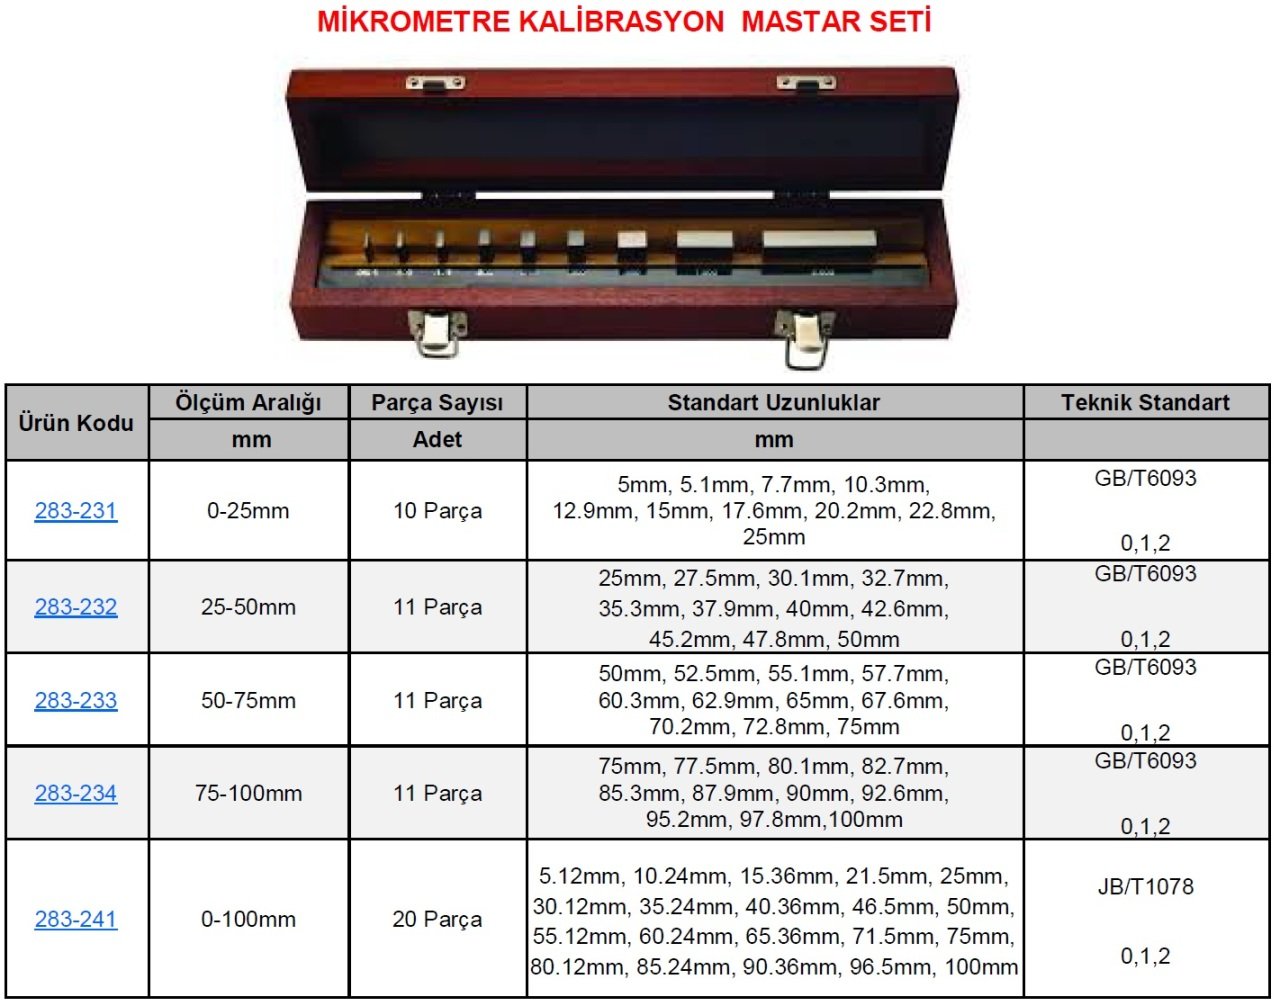 Mikrometre Kalibrasyon Seti 25-50mm